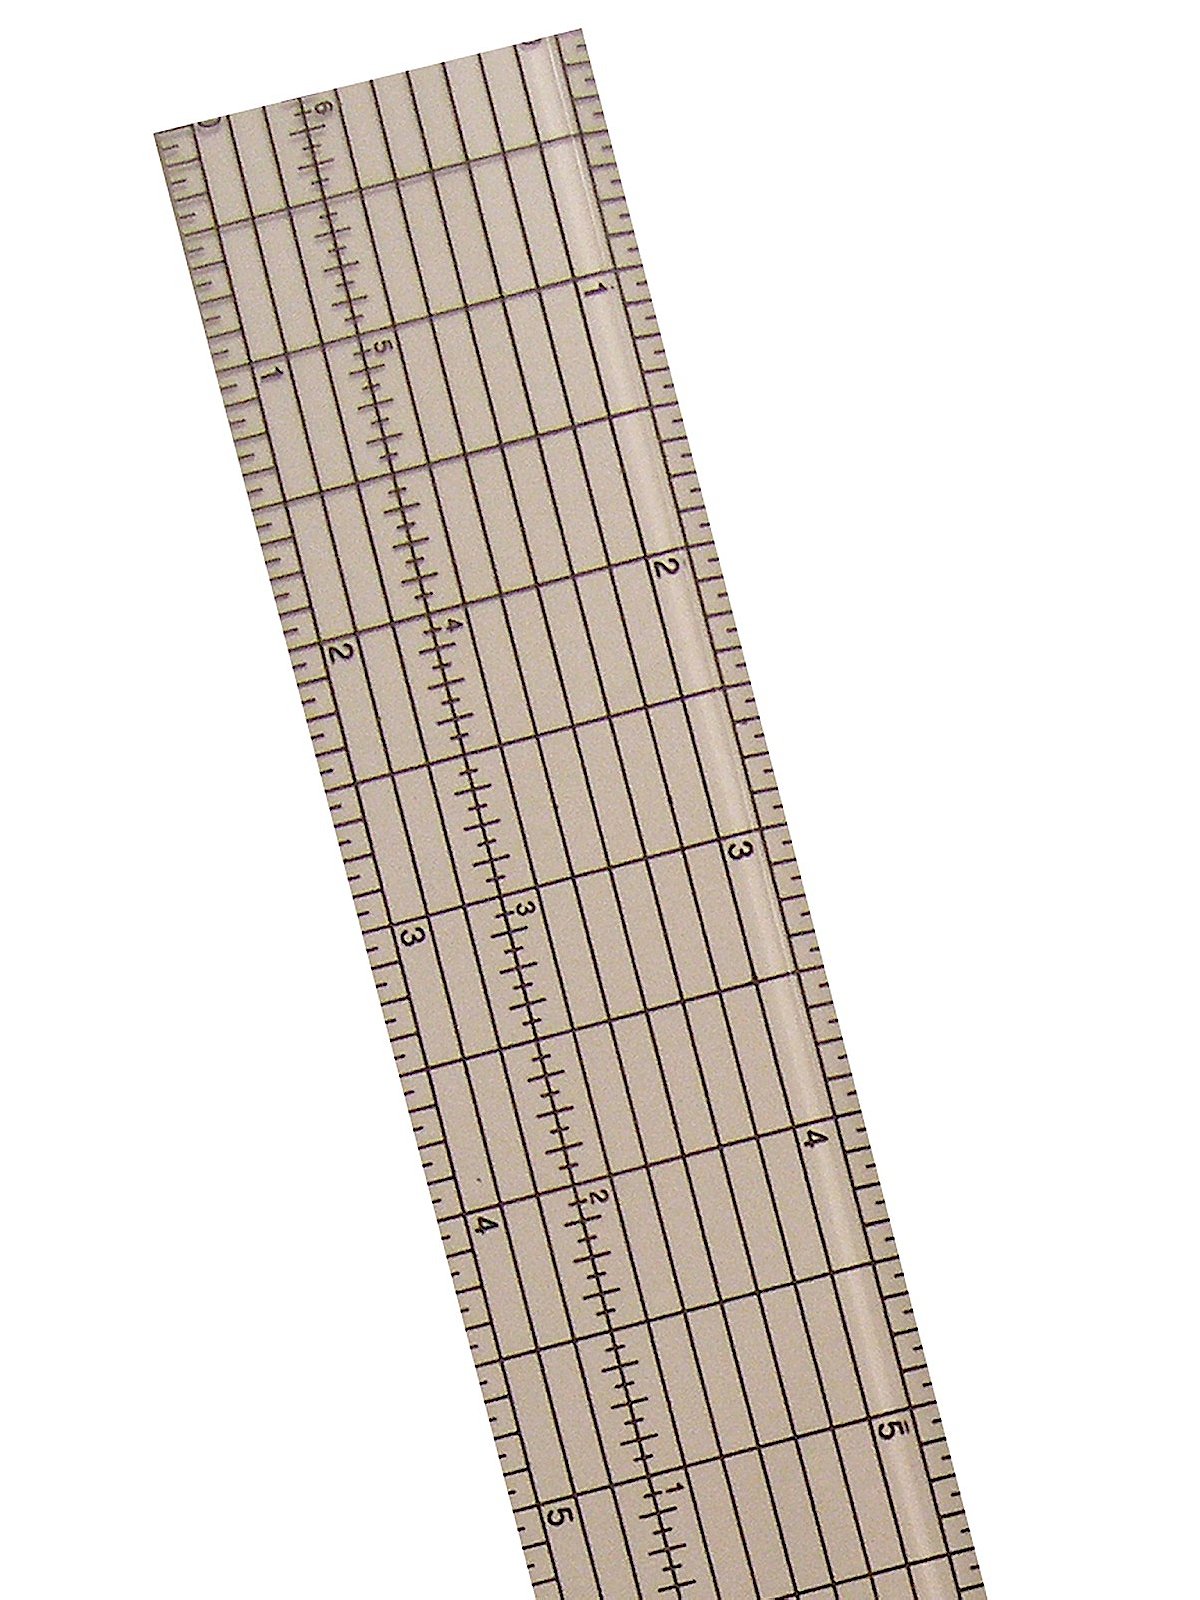 Westcott Clear Acrylic Grid Ruler with Metal Cutting Edge